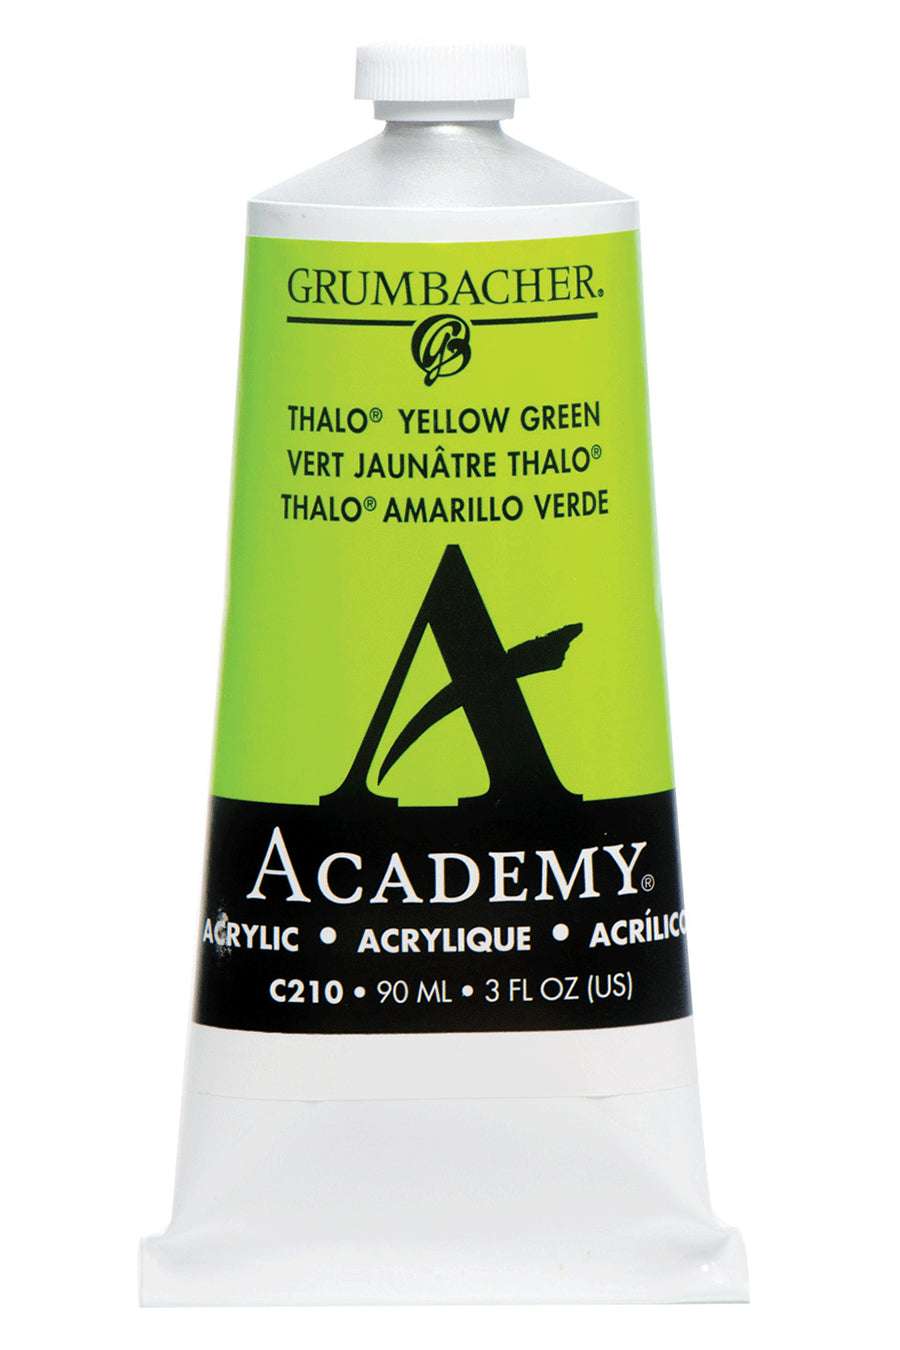 Academy® Acrylic Black Color Family - Grumbacher Art